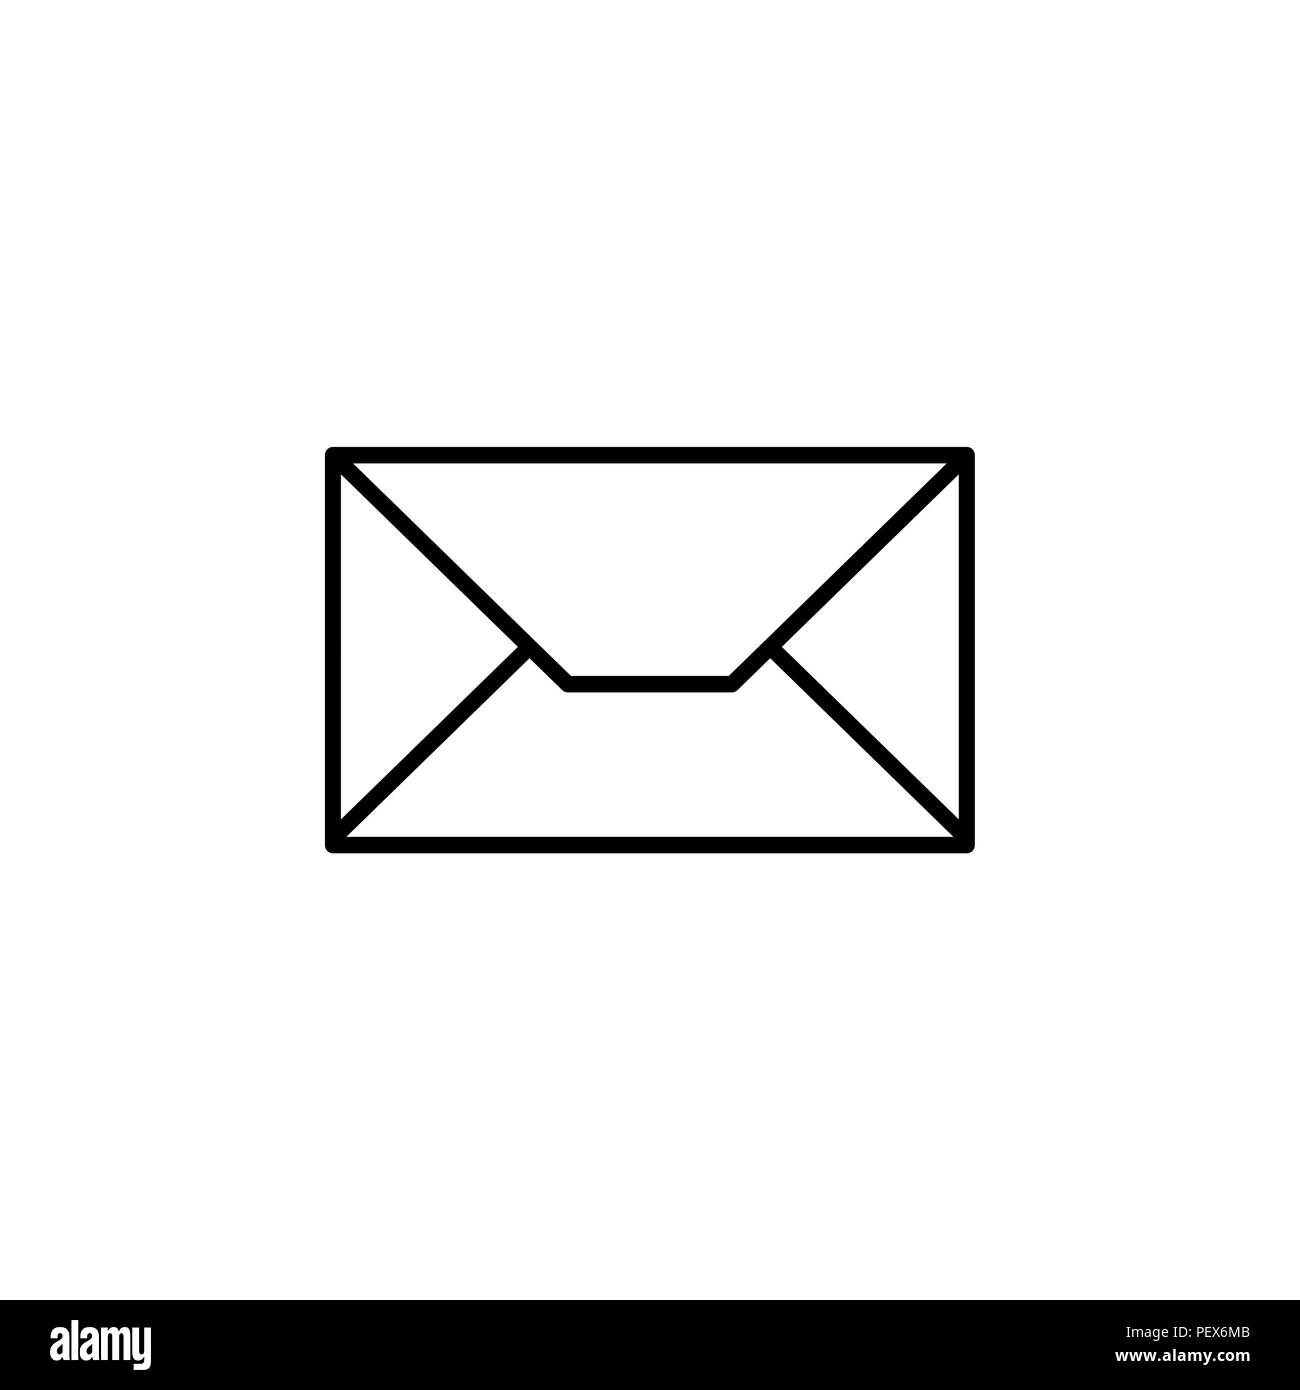 Một chiếc thư điện tử không thể thiếu là Envelope mail icon. Hãy xem hình ảnh này để cập nhật kiến ​​thức của mình về biểu tượng thông dụng này!